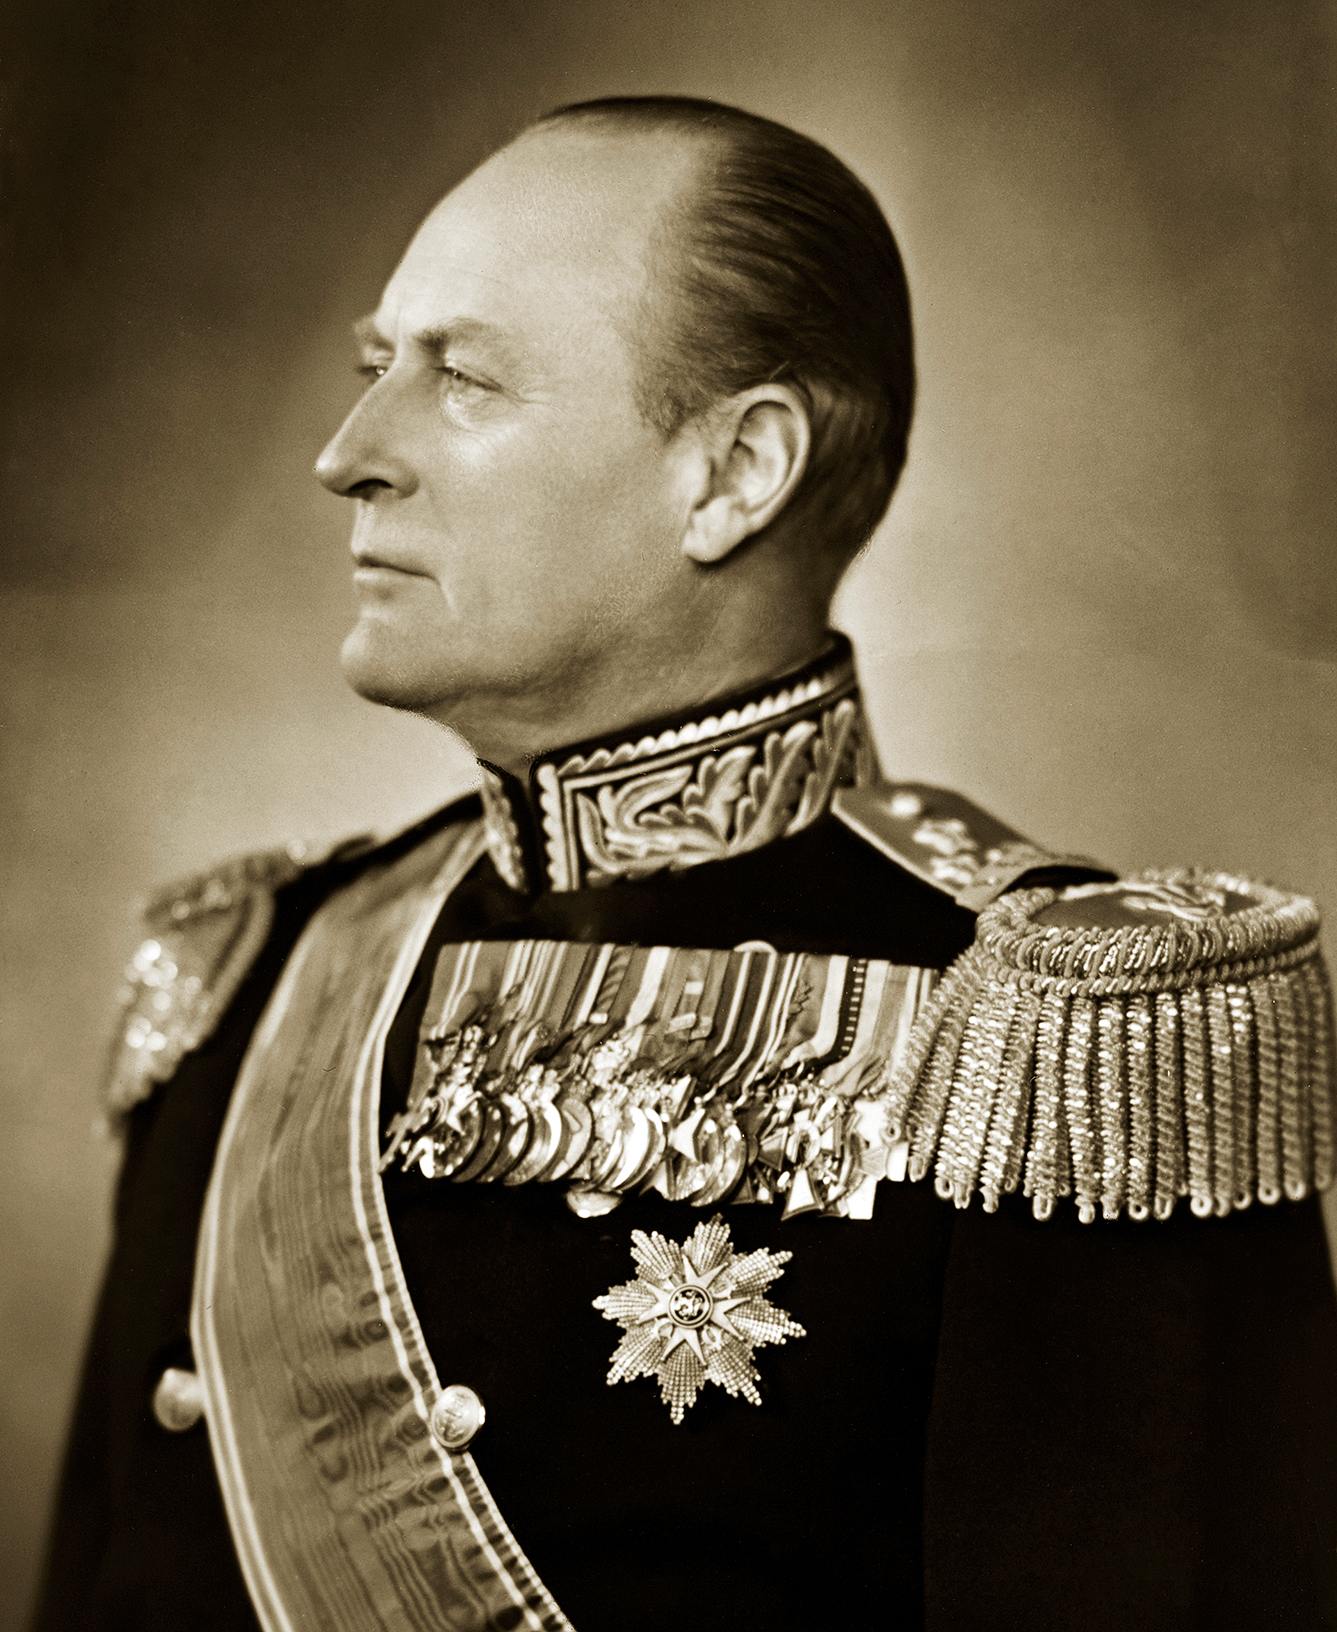 King Olav 1953. Photo: E. Rude / the Royal Collections